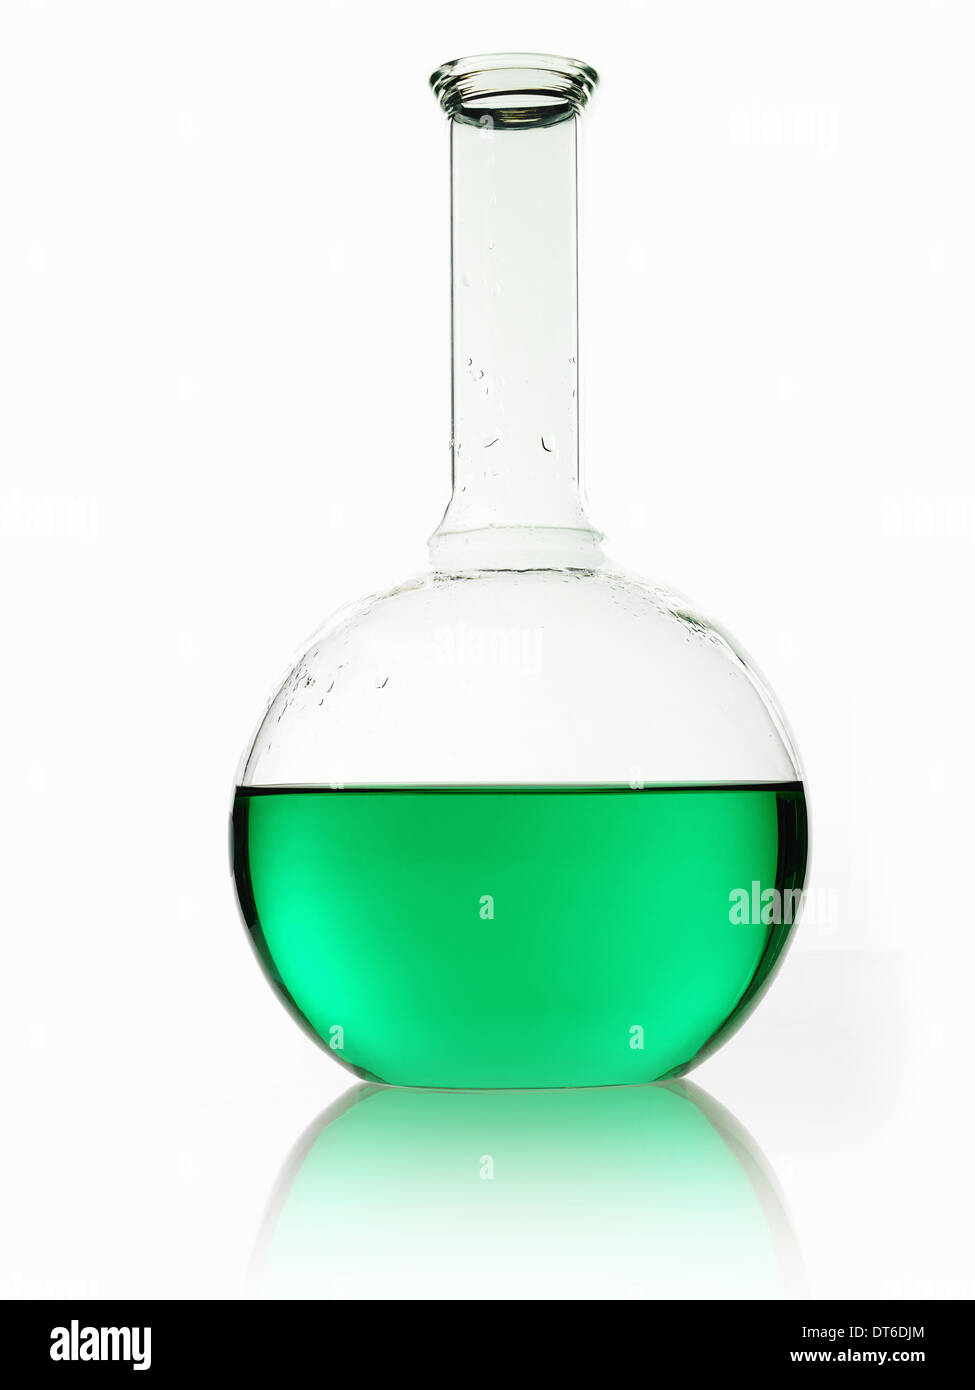 Eine abgerundete wissenschaftliche chemische Glaskolben mit einem langen Trichter Hals, grünen Flüssigkeit halten. Stockfoto